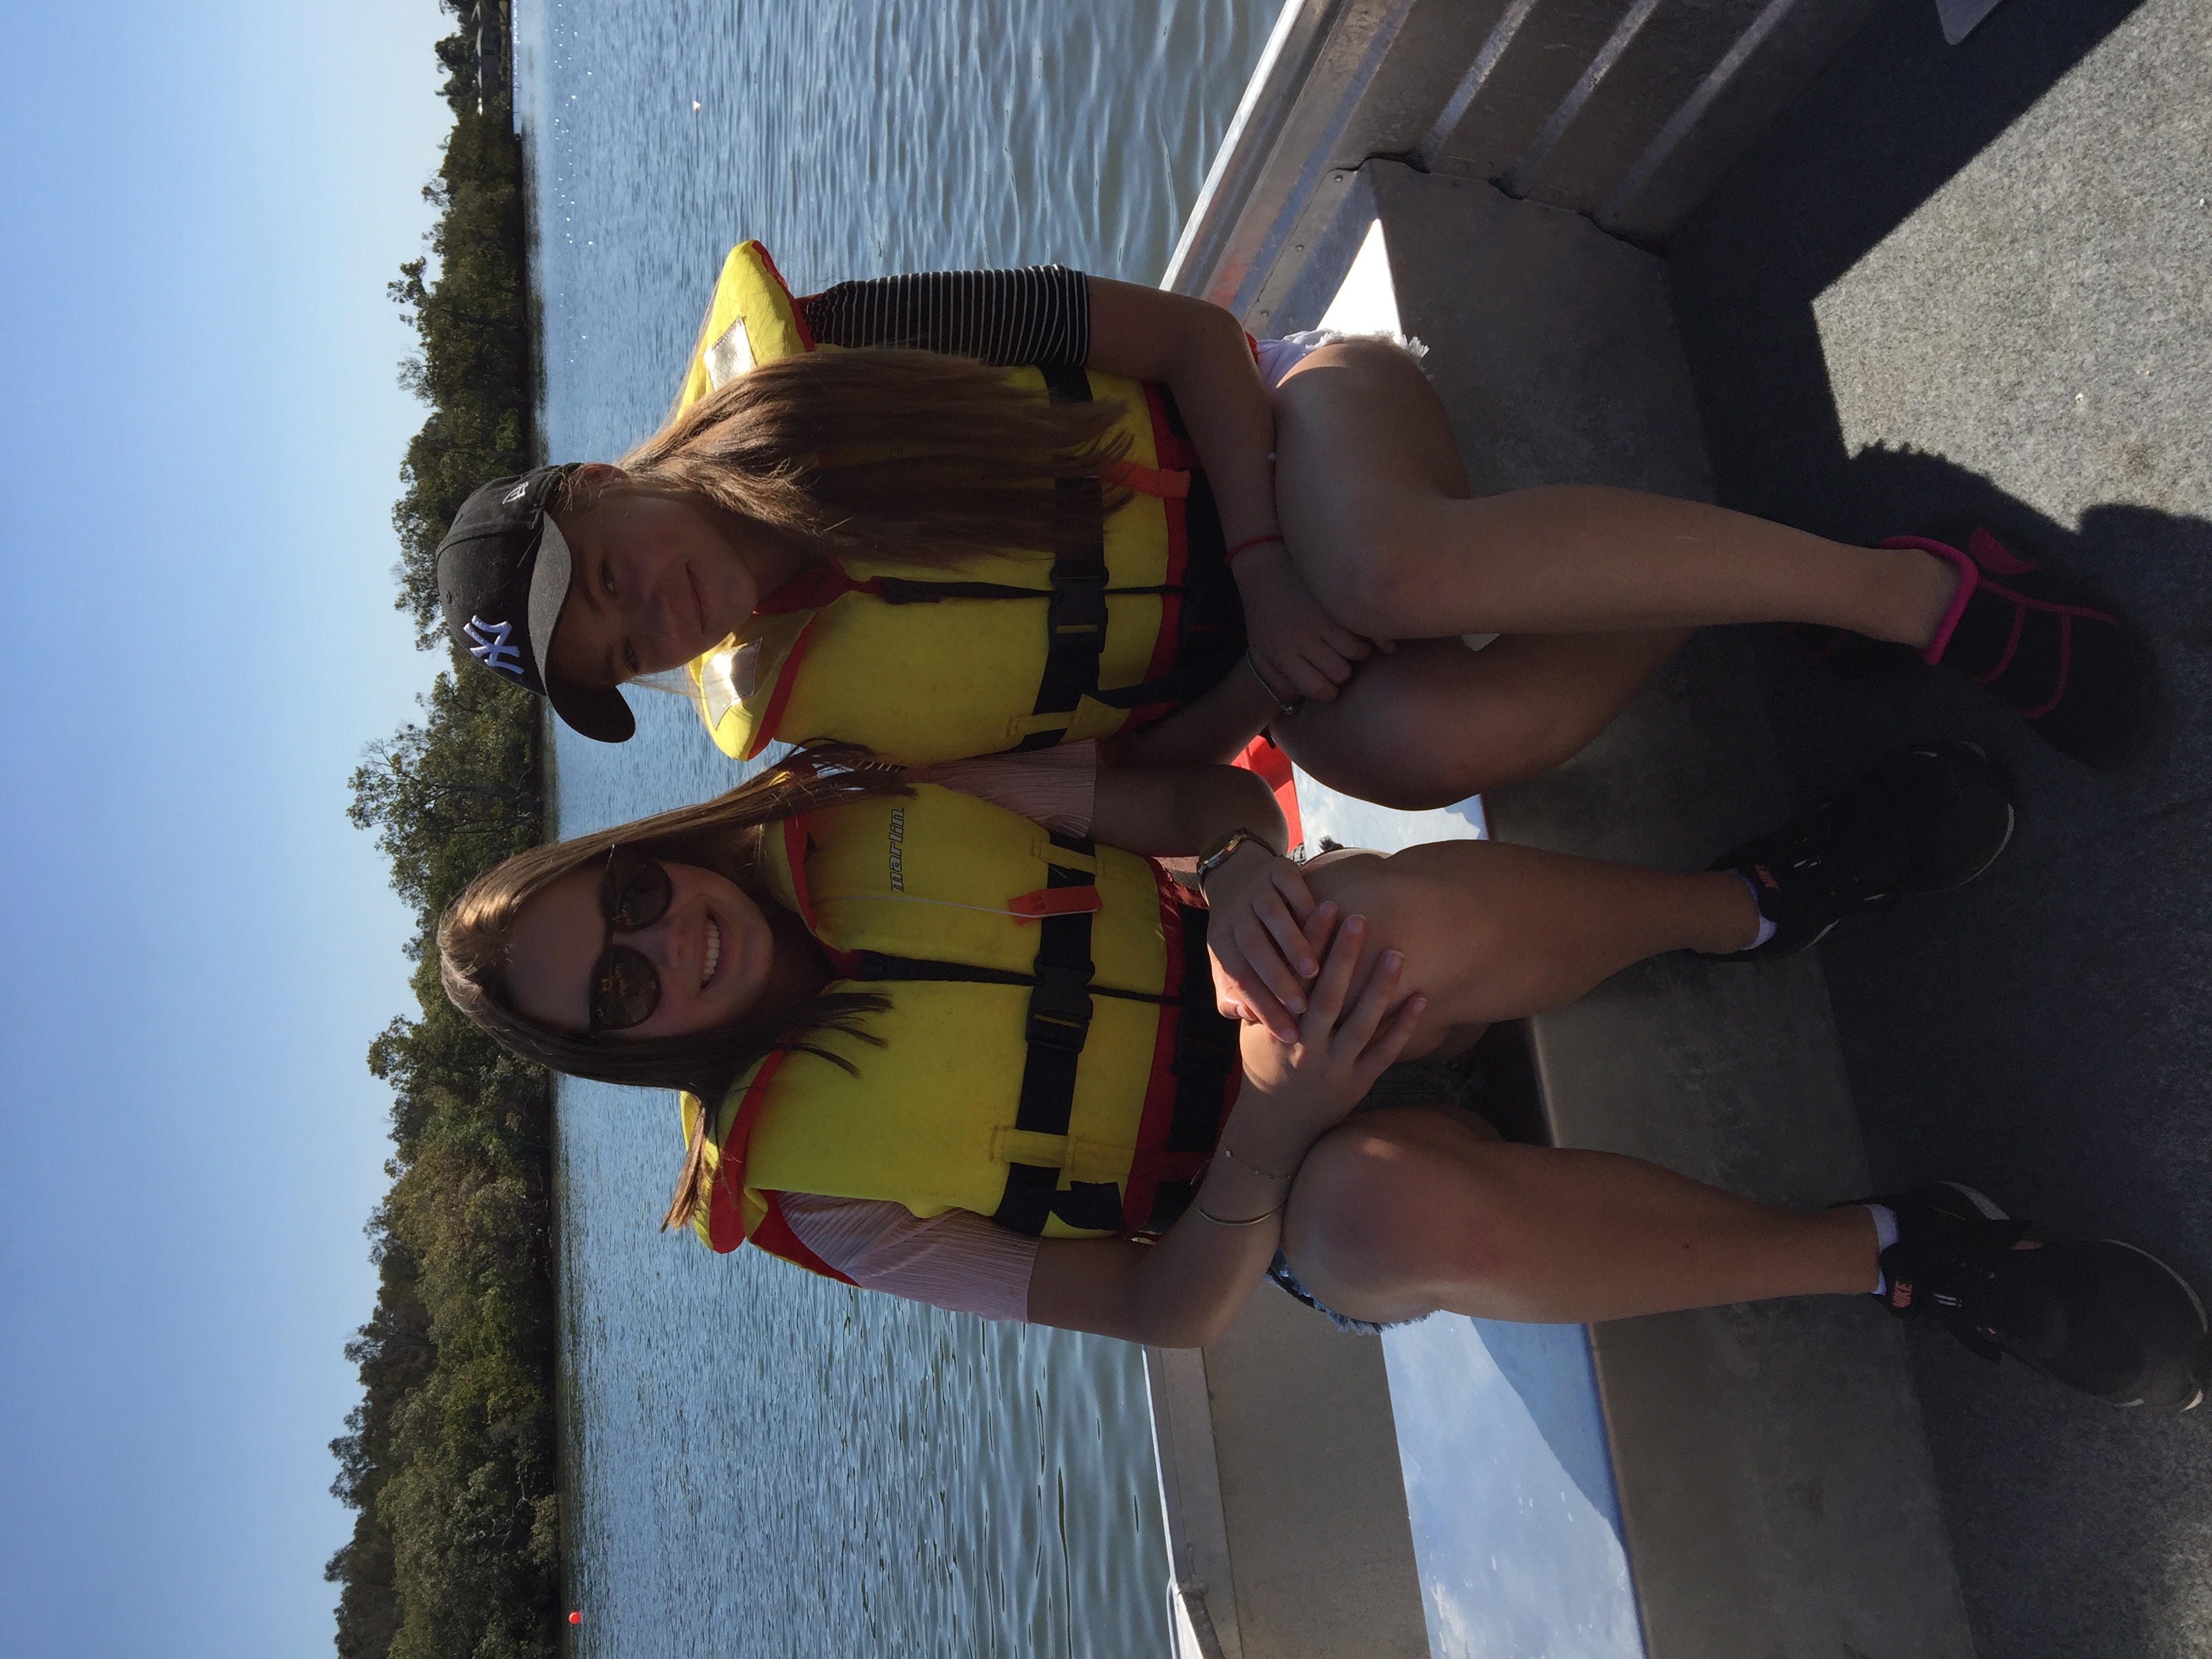 Boat day in Australia 🇦🇺 